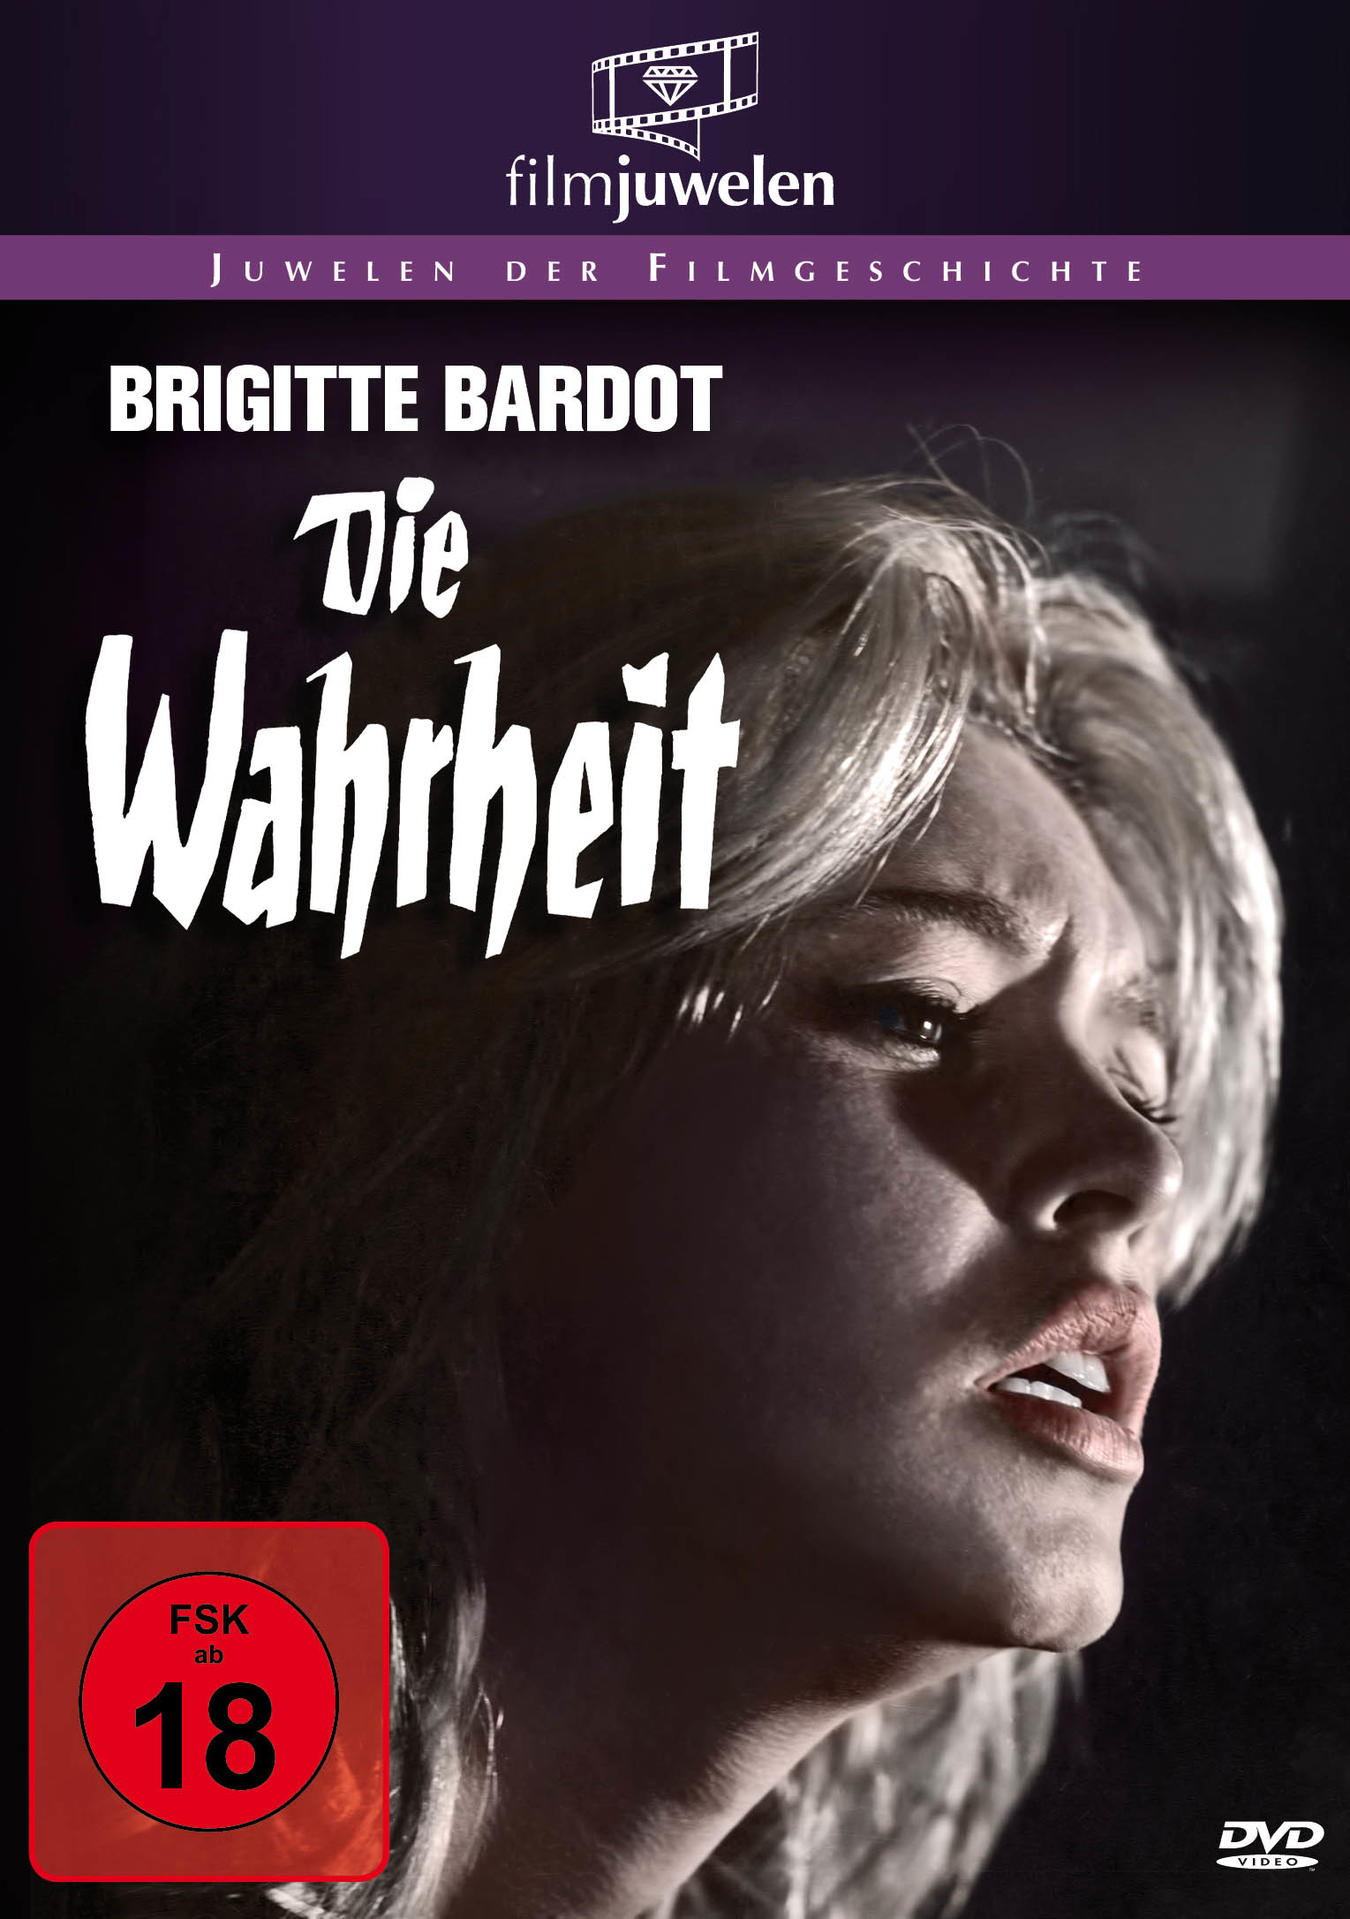 Die Wahrheit (Brigitte Bardot) DVD